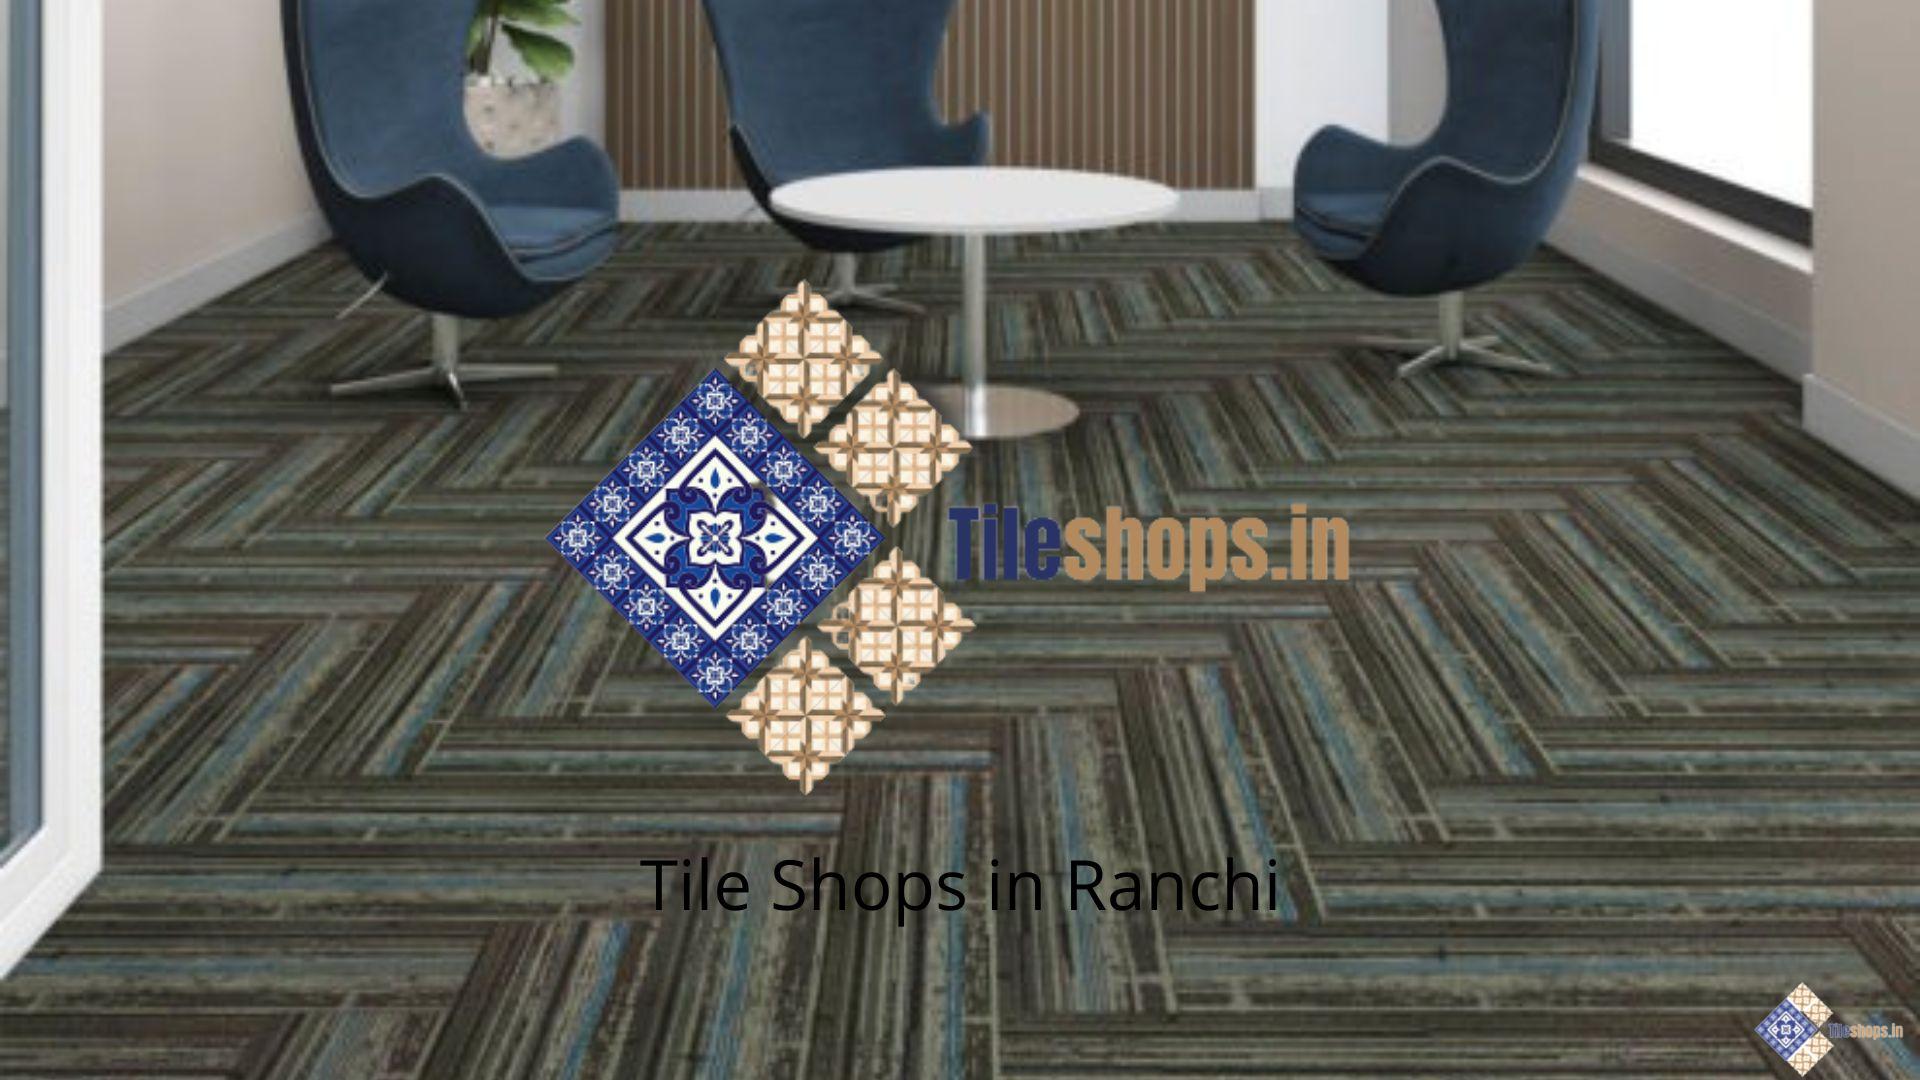 Tile Shops in Ranchi